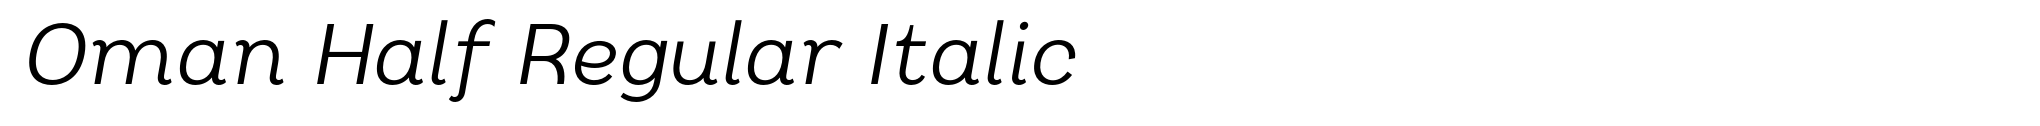 Oman Half Regular Italic image